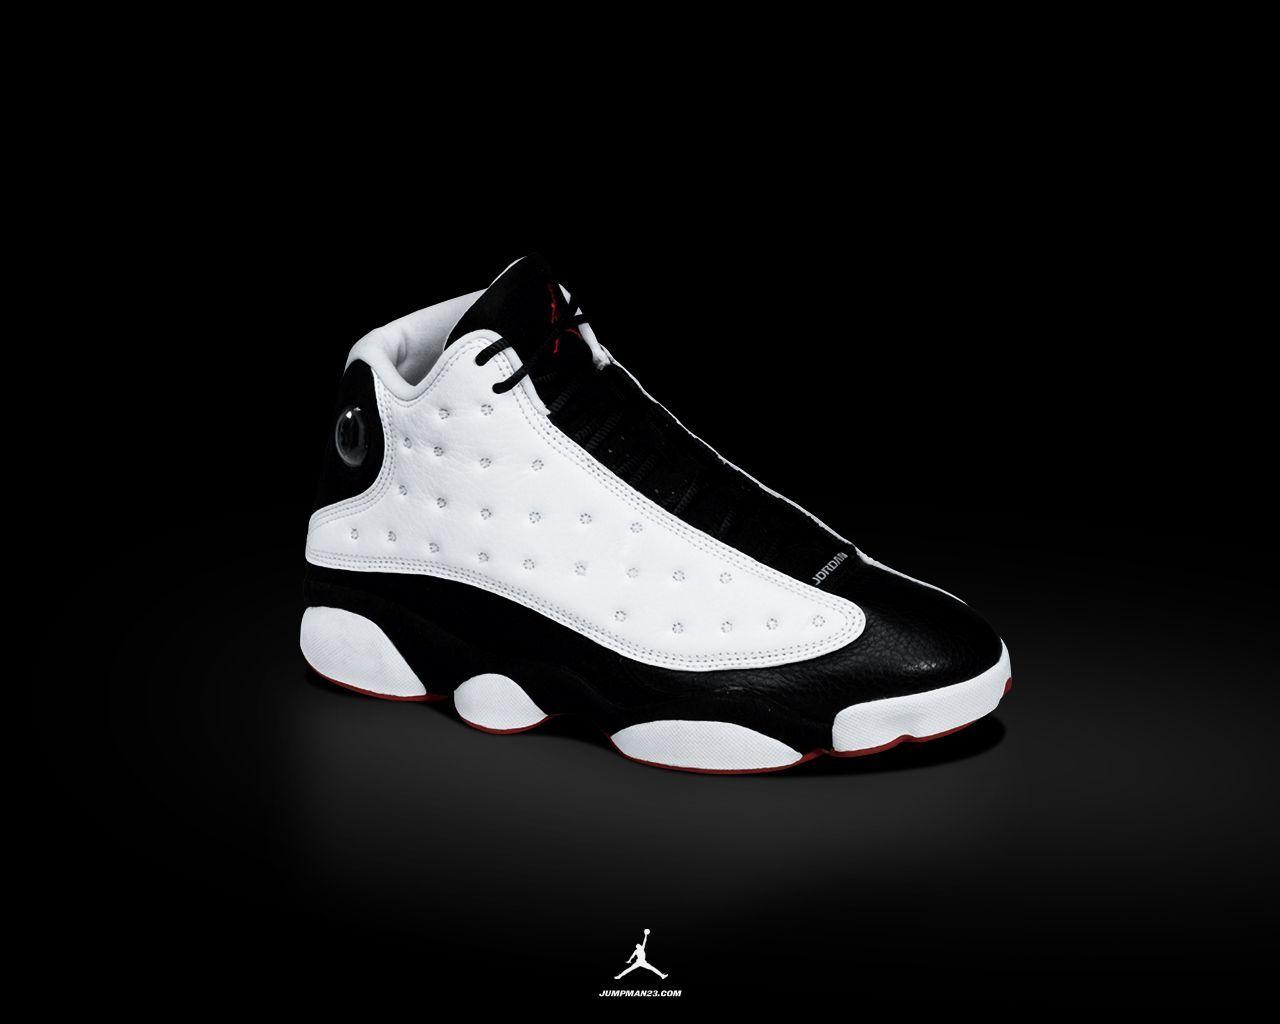 Image For > Air Jordan Shoes Wallpapers Desktop